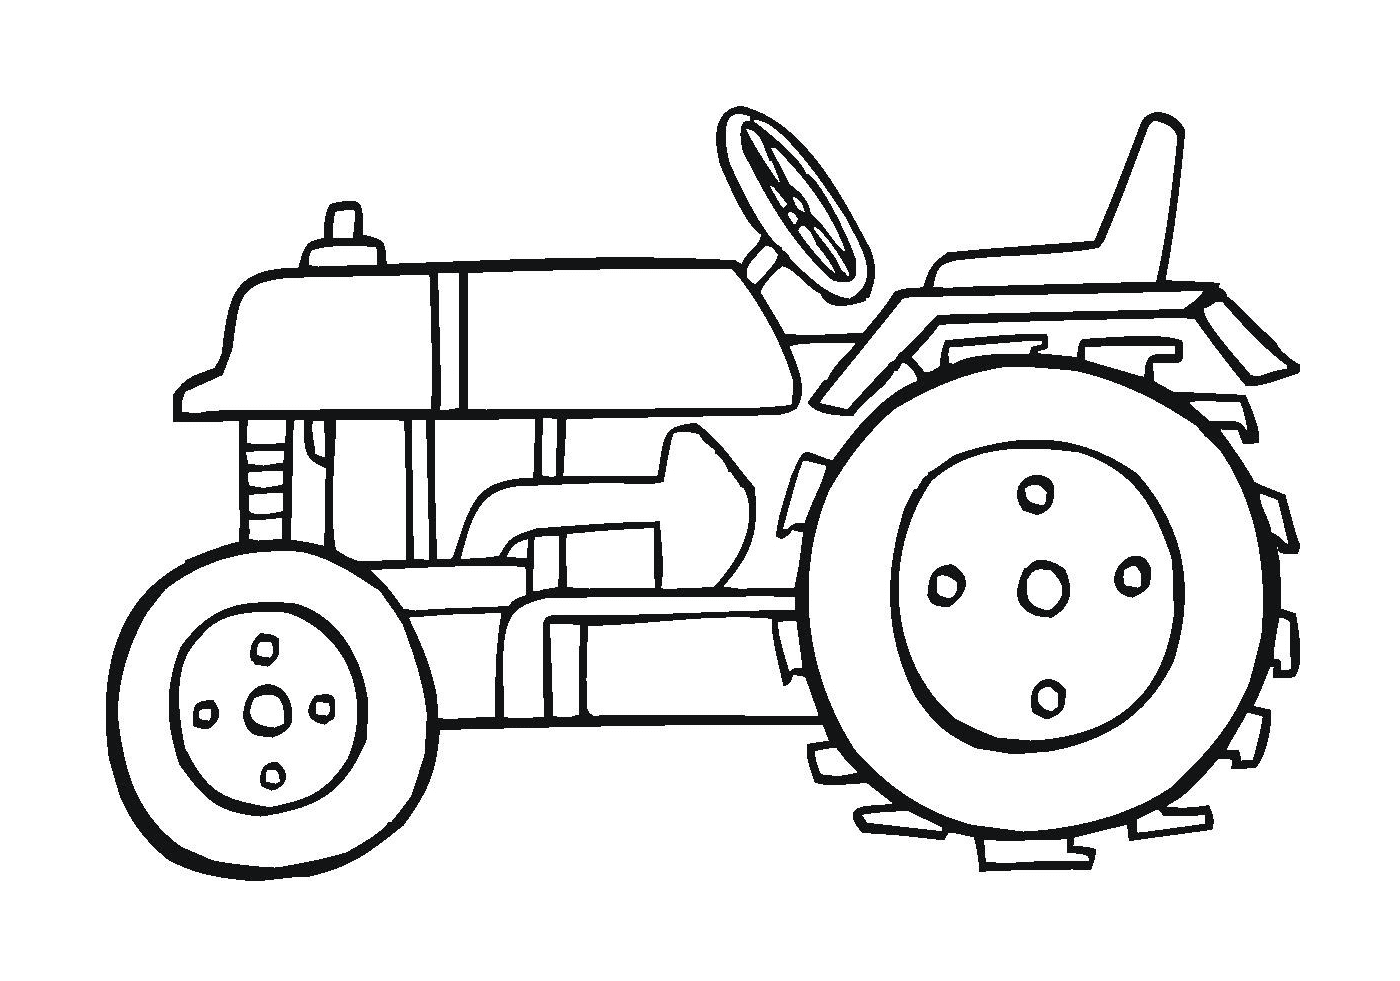  Poderoso tractor, eficiente máquina agrícola 